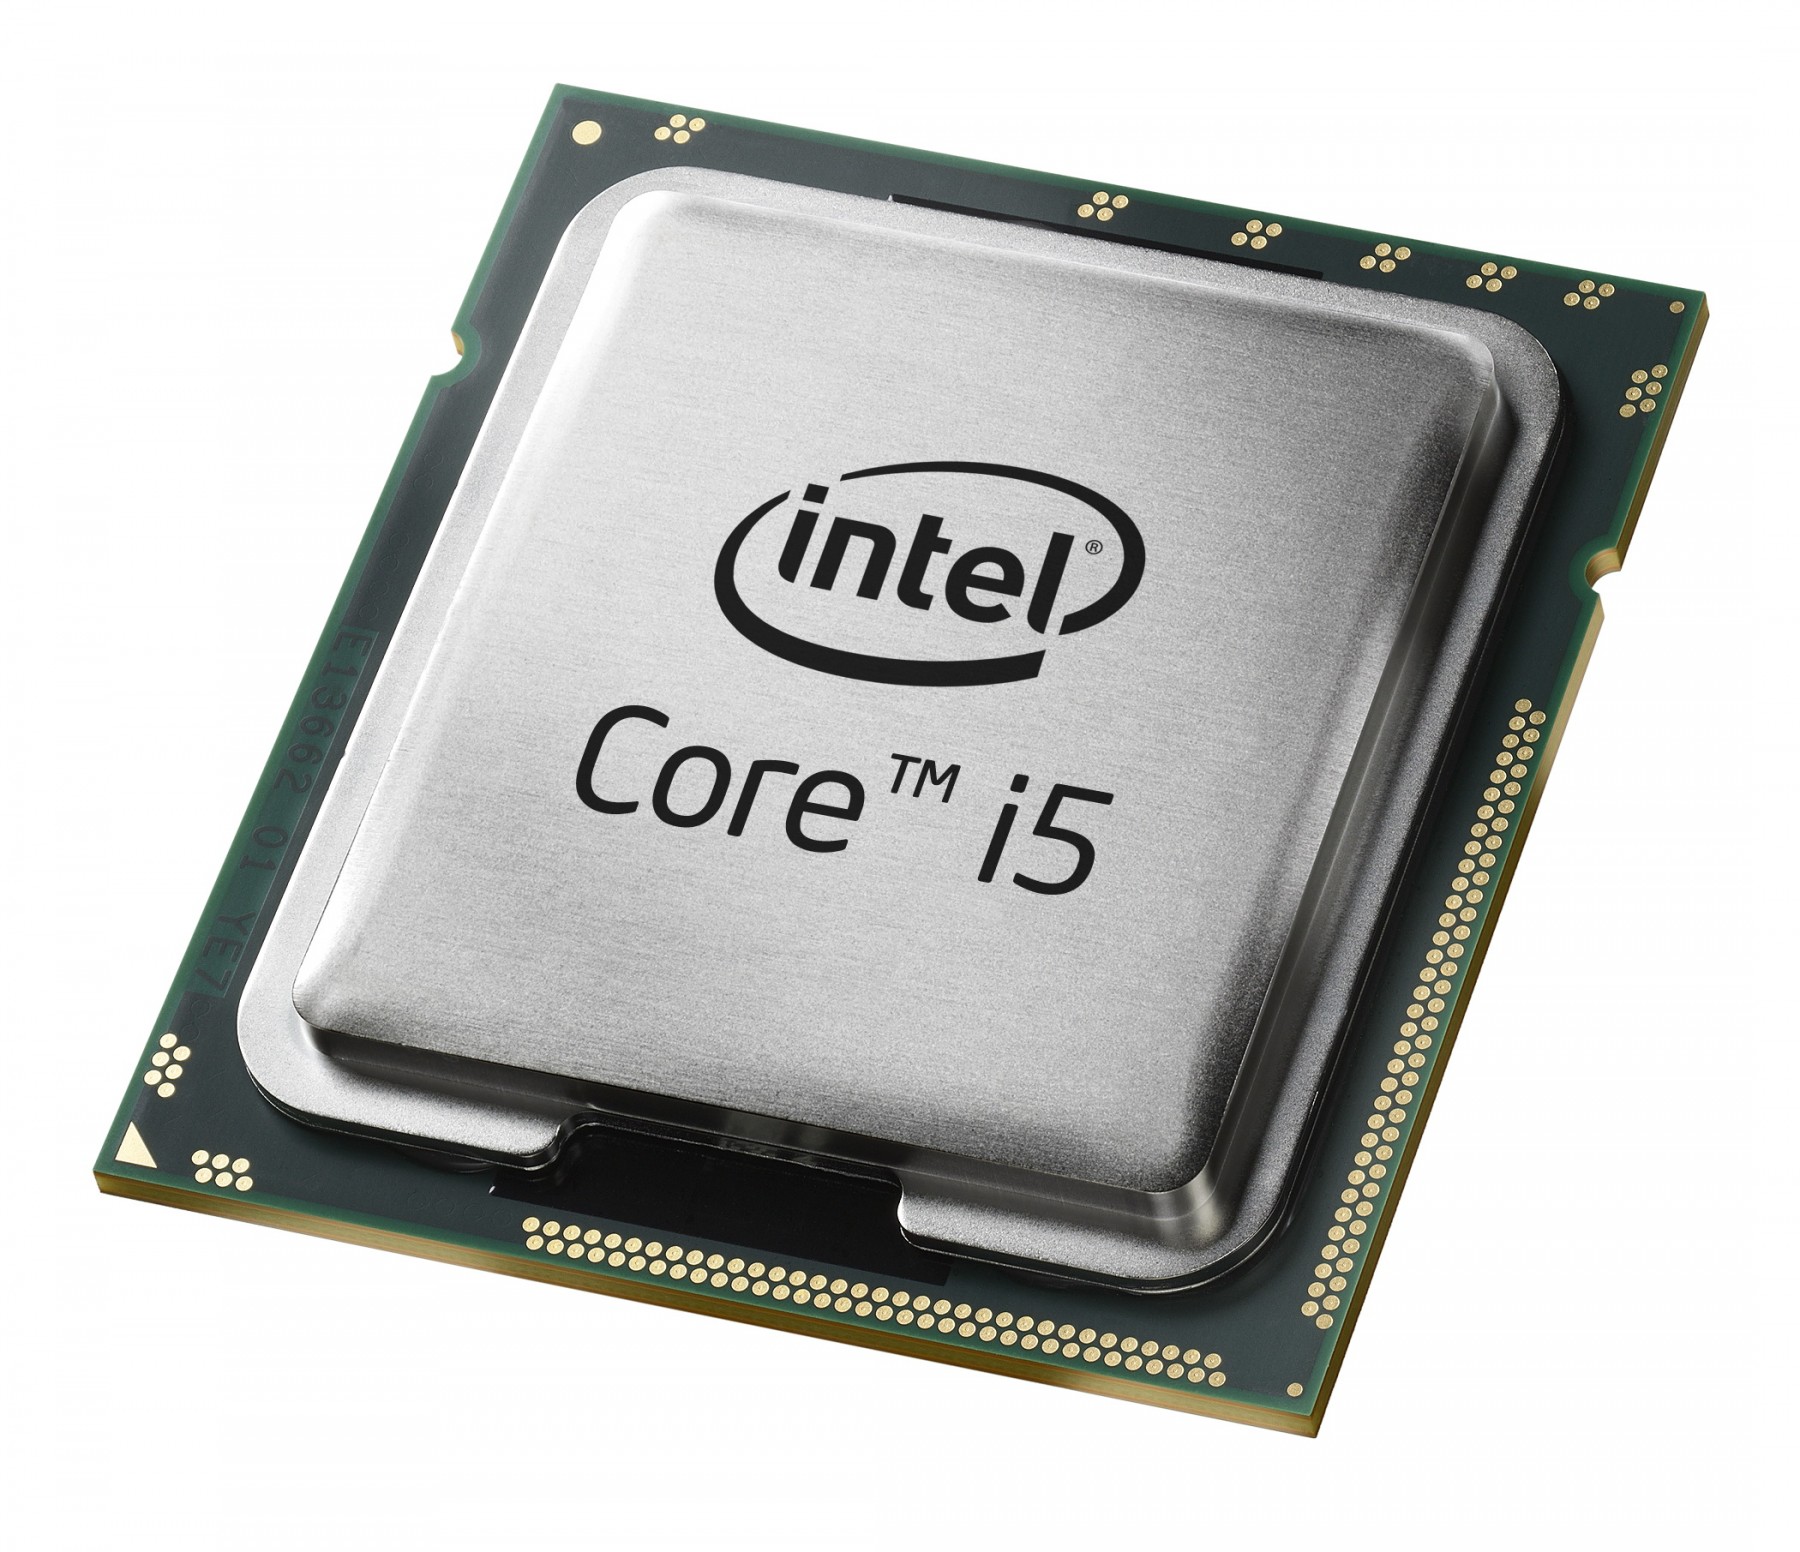 500030394-Intel Core i5-4200Y SR18T 1.4Ghz 5GT/s BGA 1168 Processor-image